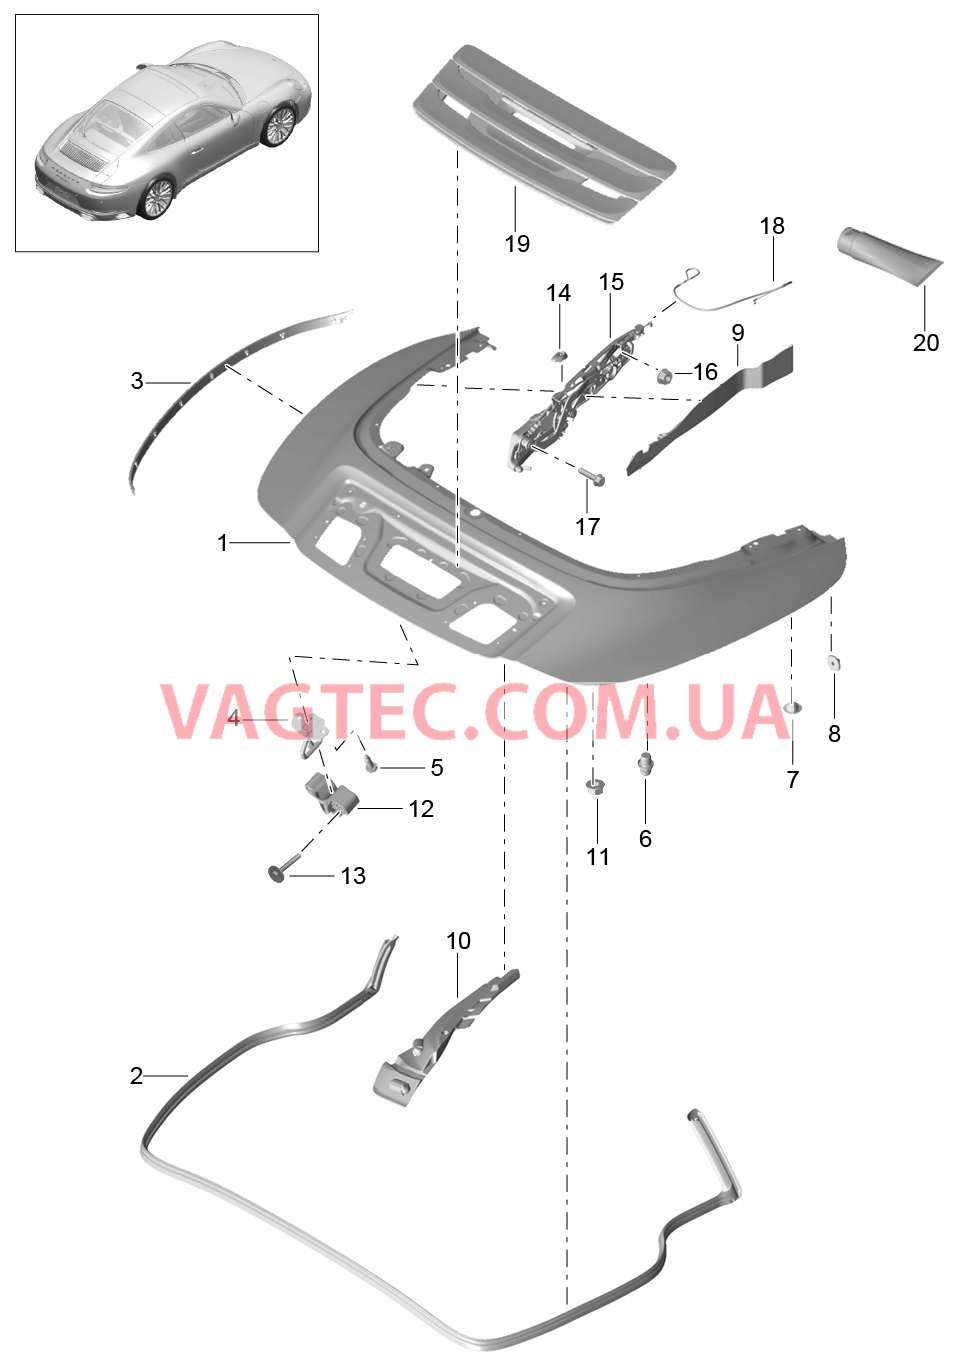 811-062 Отсек складного верха, Крышка
						
						TARGA для PORSCHE 911.Carrera 2017-2018